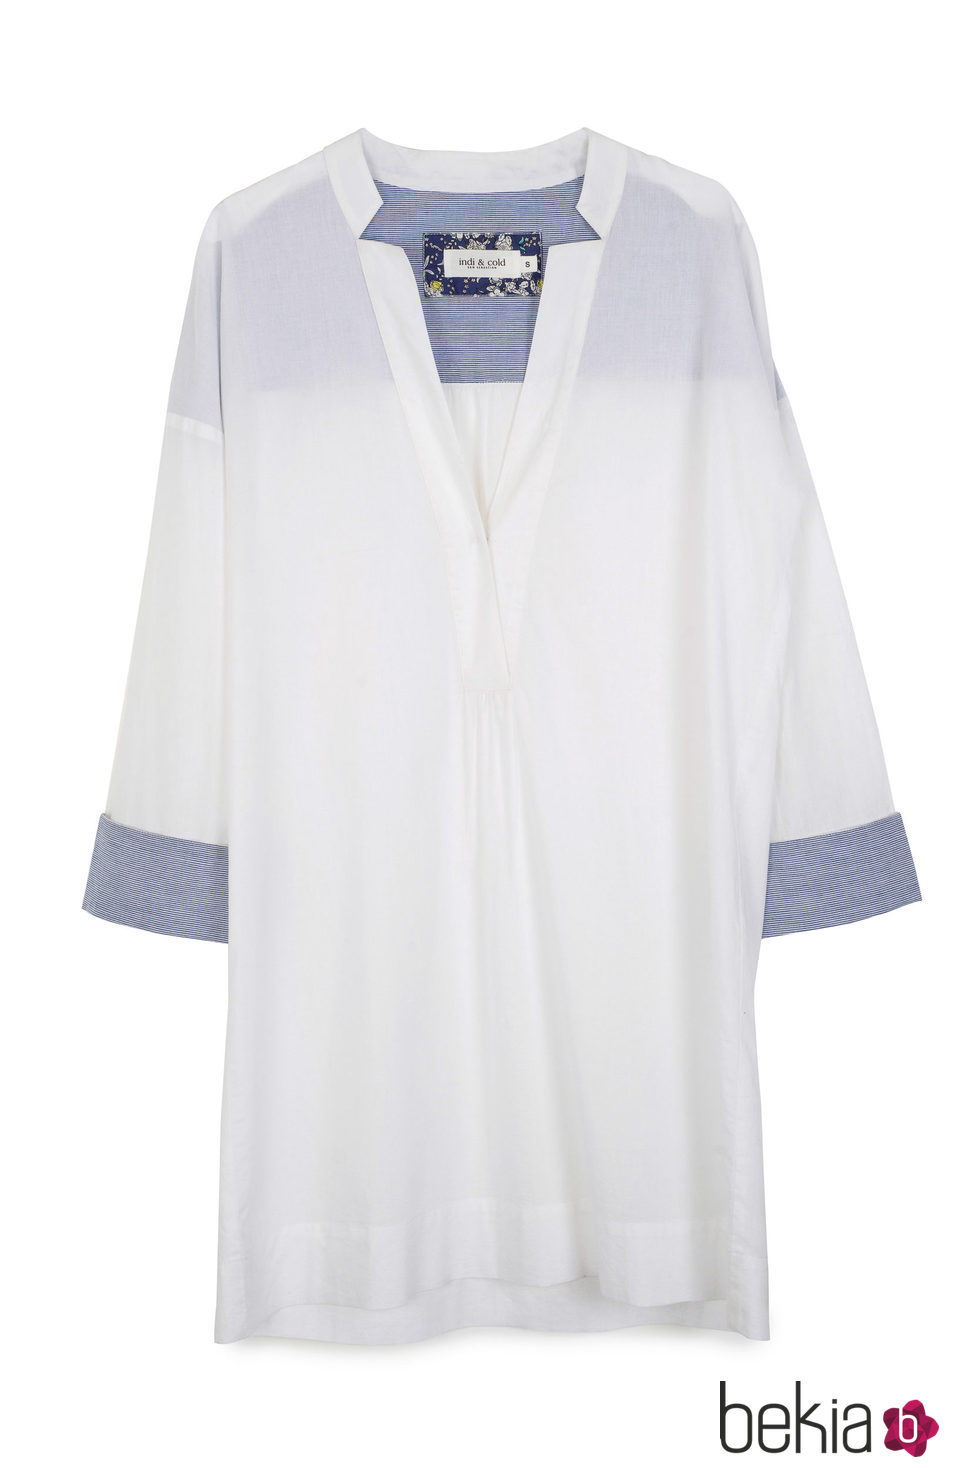 Vestido ancho blanco y azul con escote en pico de la nueva colección verano 2016 de Indi&Cold